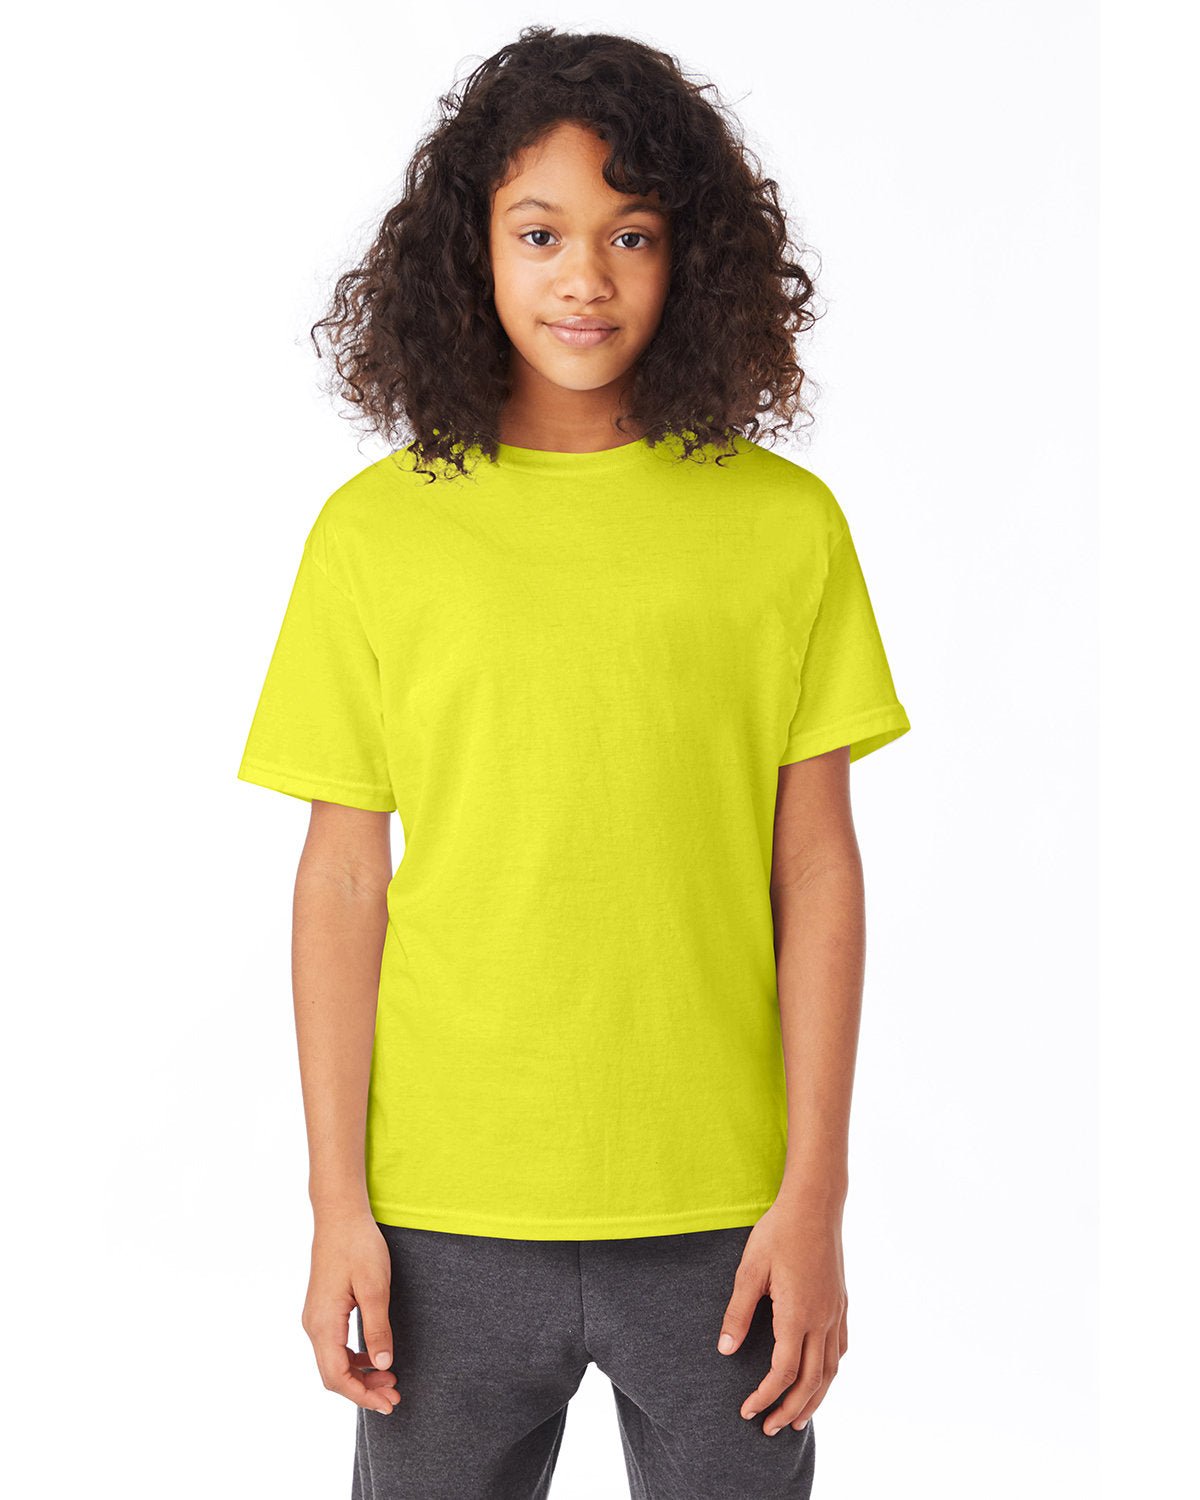 5370-Hanes-SAFETY GREEN-Hanes-T-Shirts-1